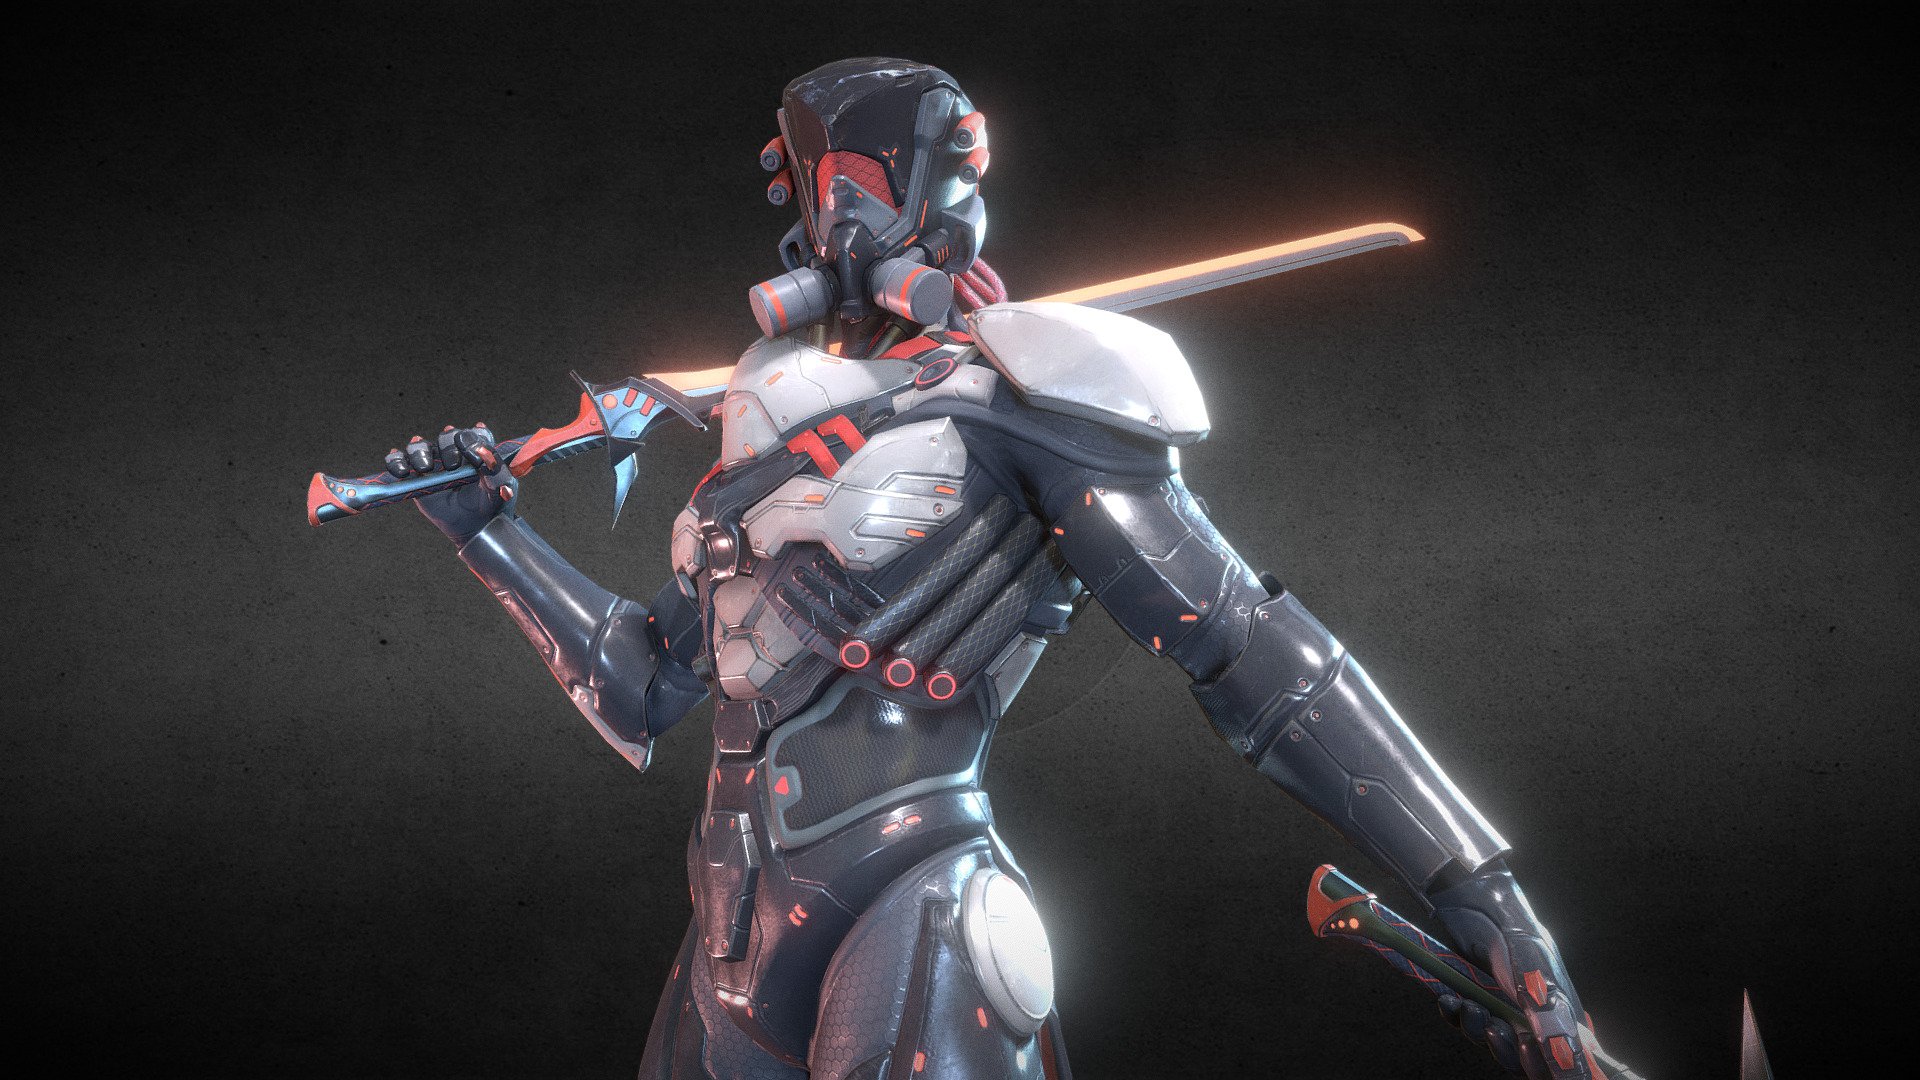 juegostudio.com - Sci Fi Character with Blades - 3D model by JuegoStudio 3d model